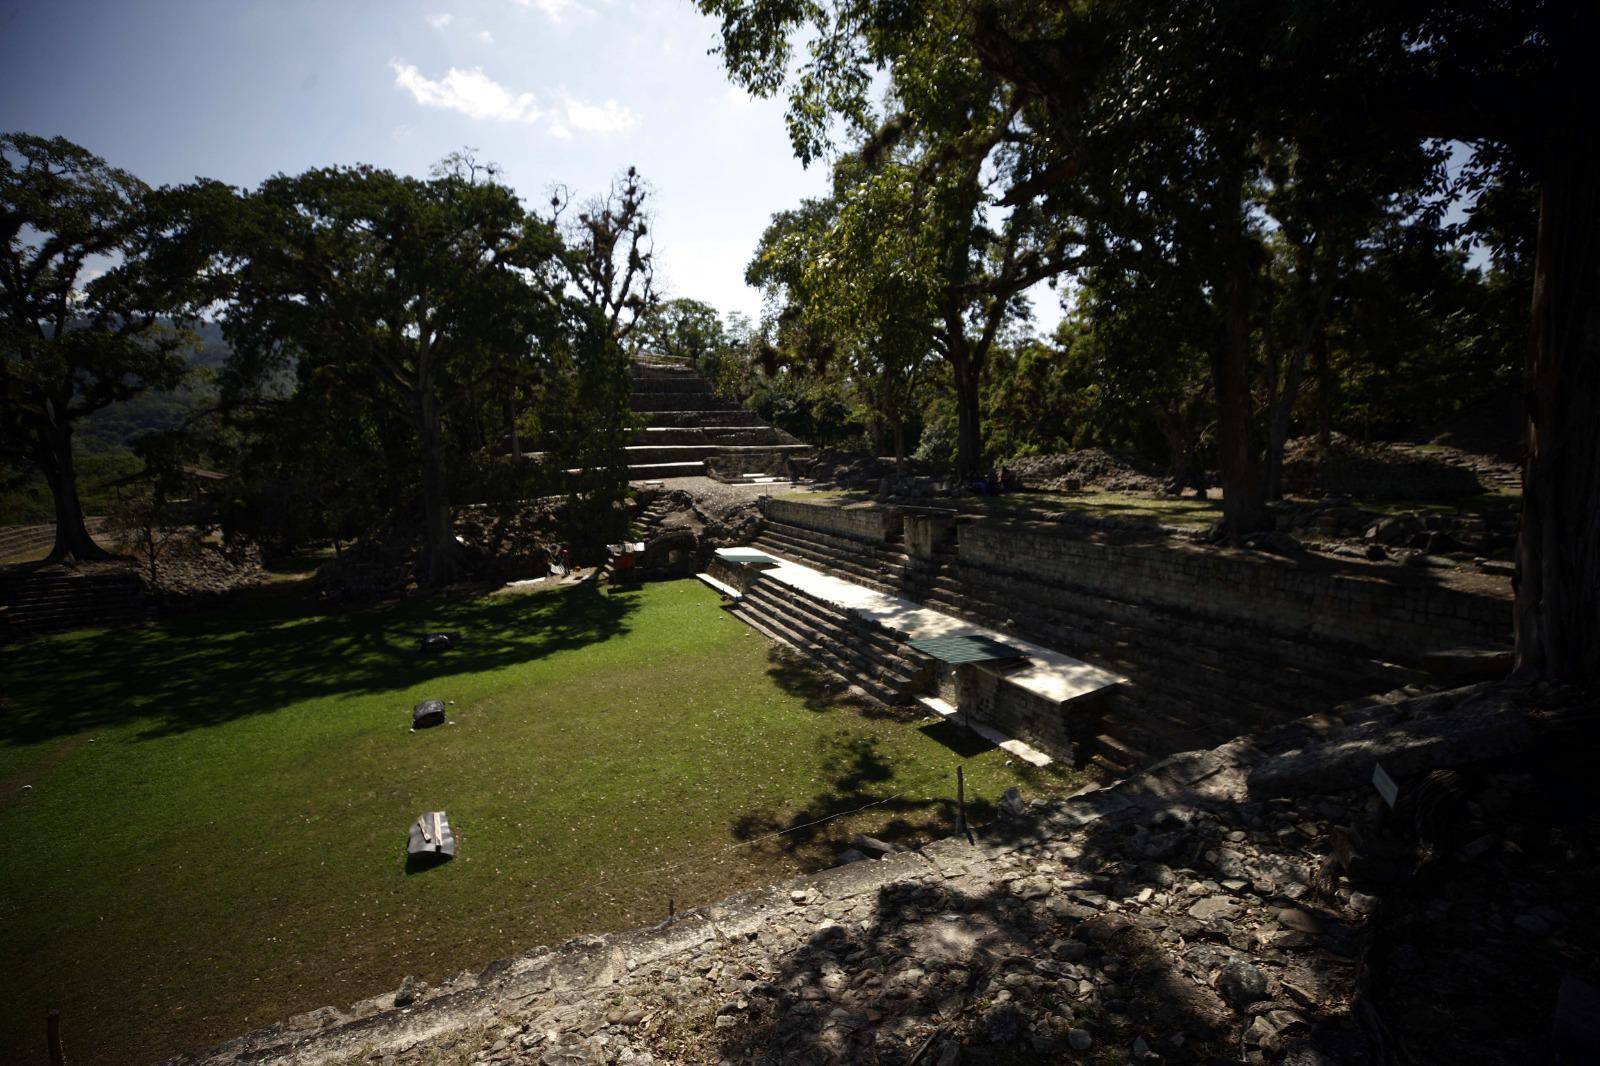 $!Las Ruinas de Copán es uno de los destinos preferidos de los turistas extranjeros, pero en Semana Santa llegan miles de hondureños a conocer de la cultura Maya.